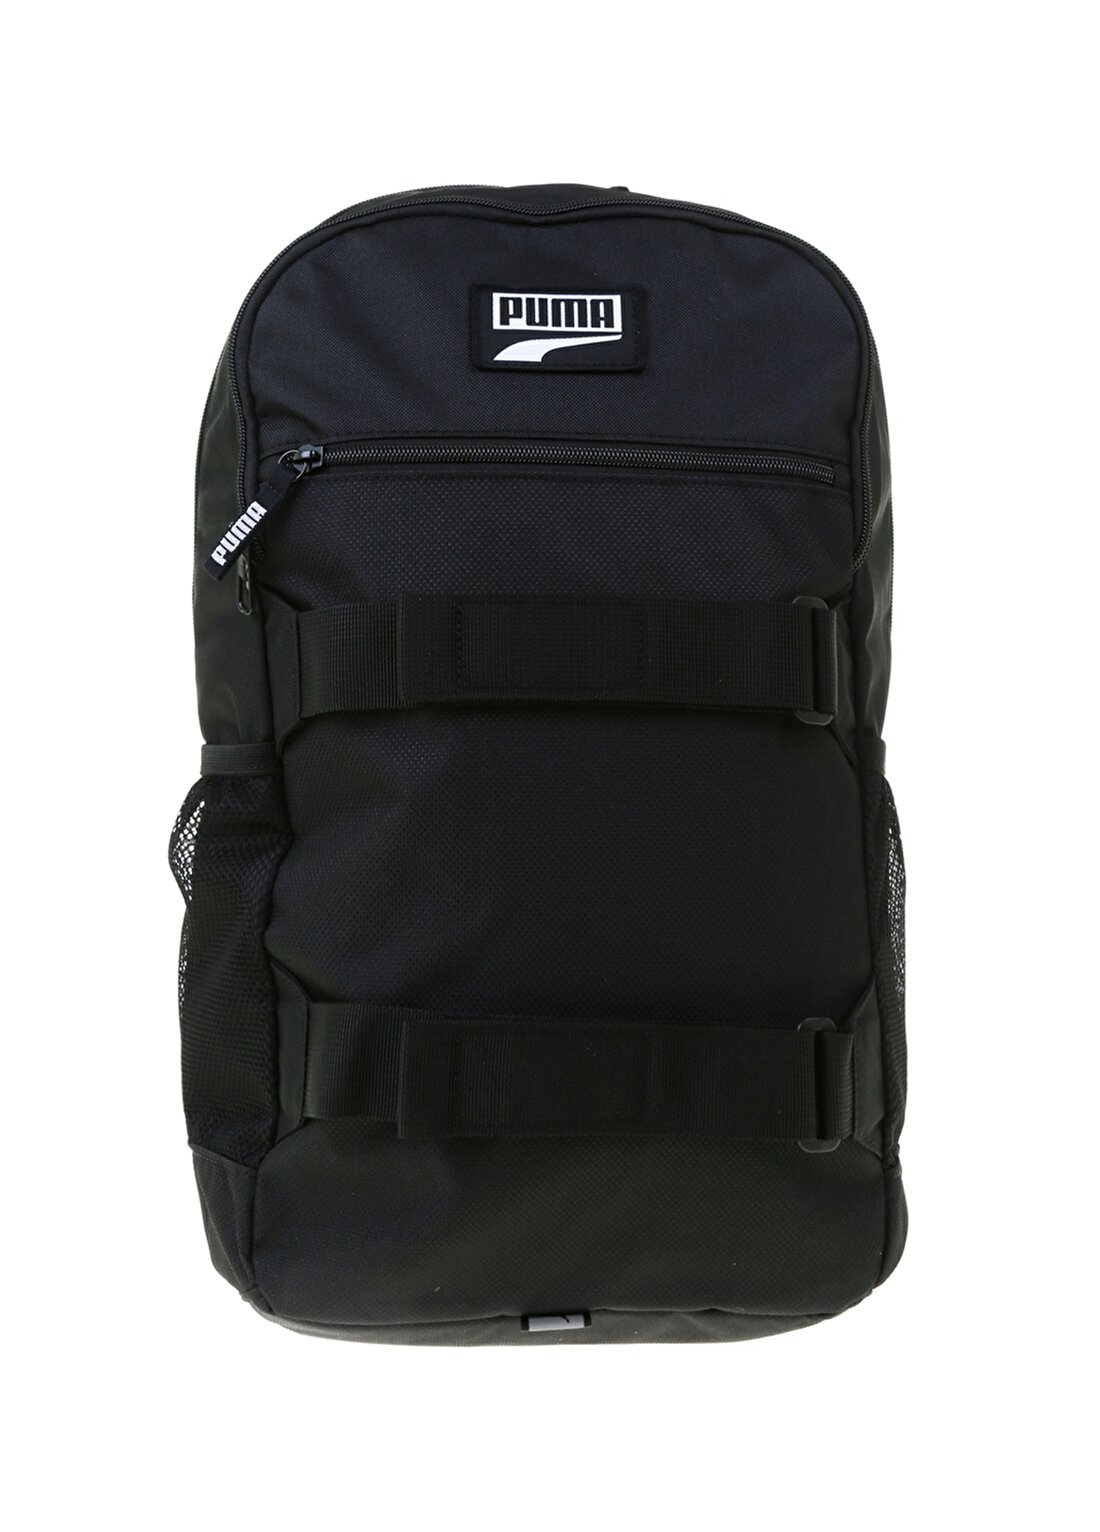 Puma Deck Backpack 7690501 Siyah Unisexsırt Çantası